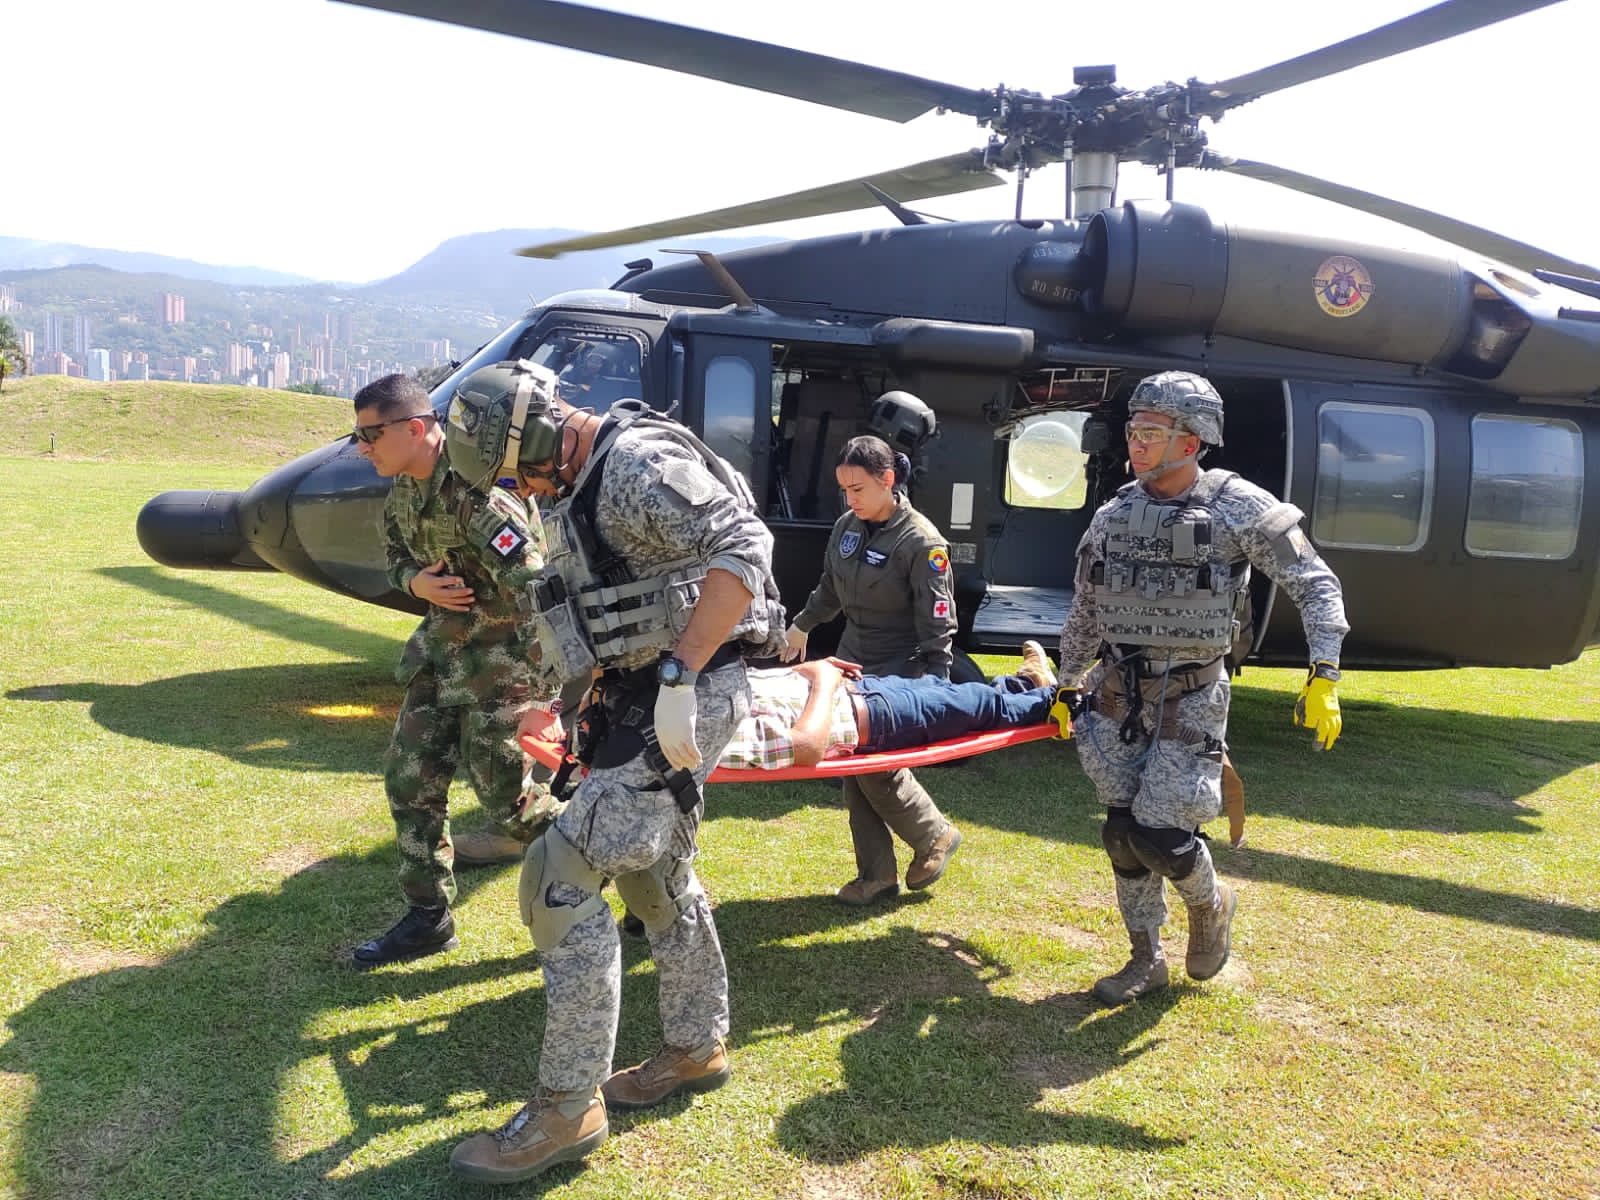  Un hombre de 61 años de edad que sufrió una mordedura de serpiente en uno de sus dedos de la mano derecha, fue evacuado en un helicóptero Uh- 60 de su Fuerza Aérea Colombiana, en Antioquia.